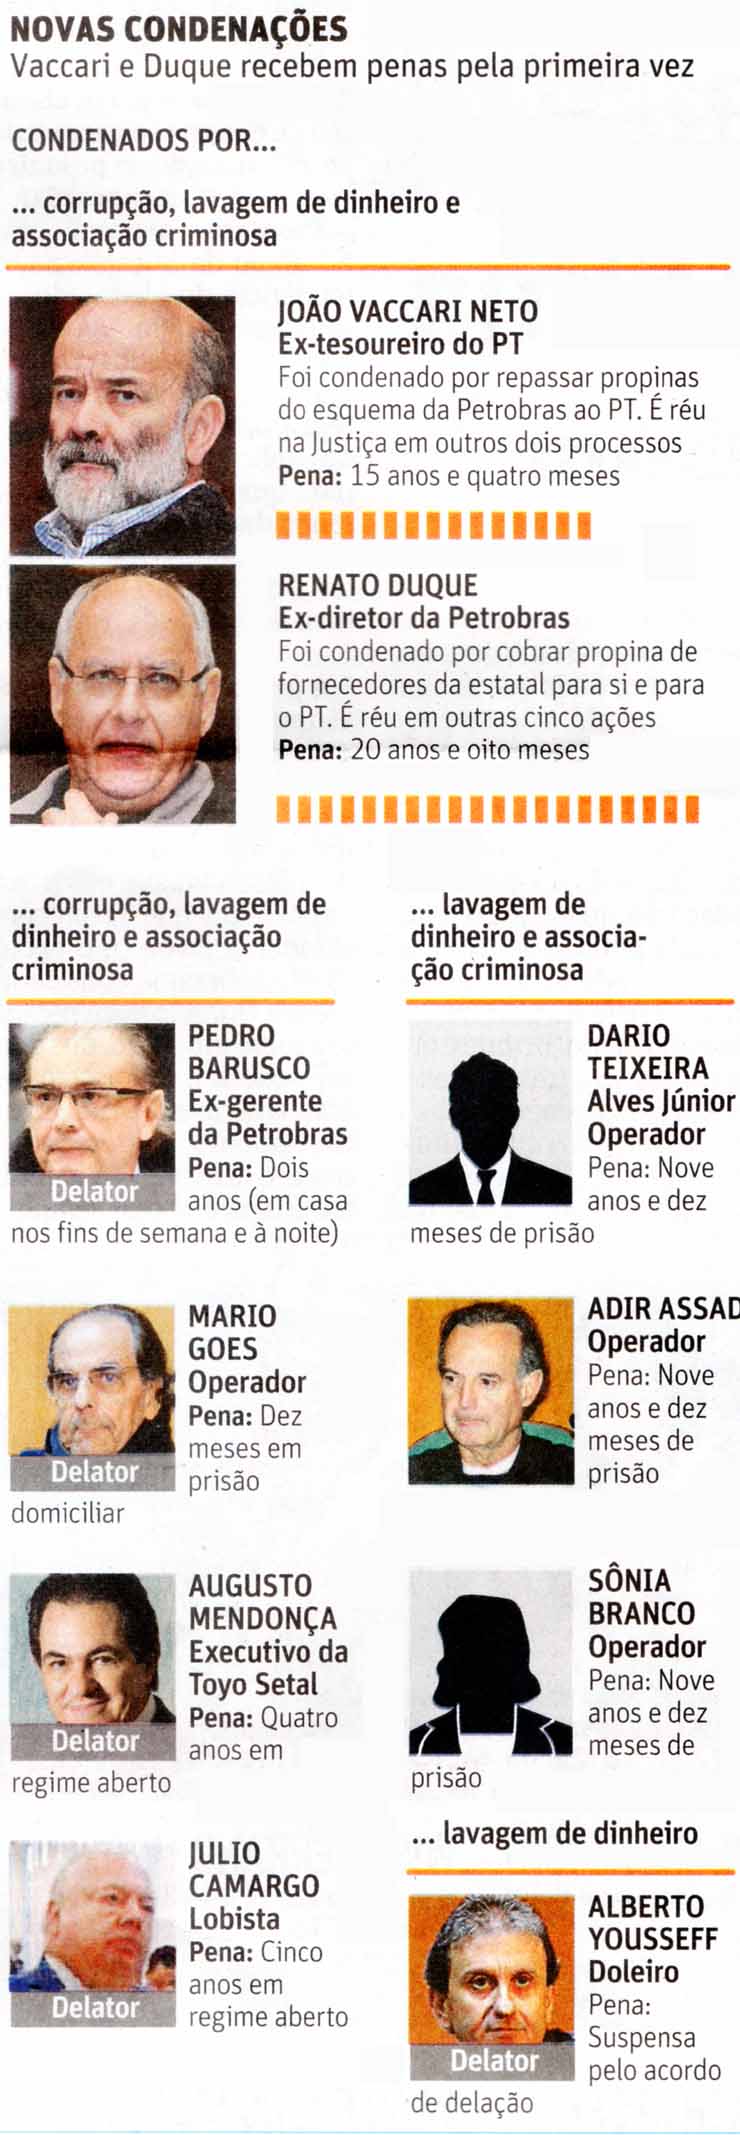 Folha de So Paulo - 22/09/15 - Lava-Jato: Novas condenaes